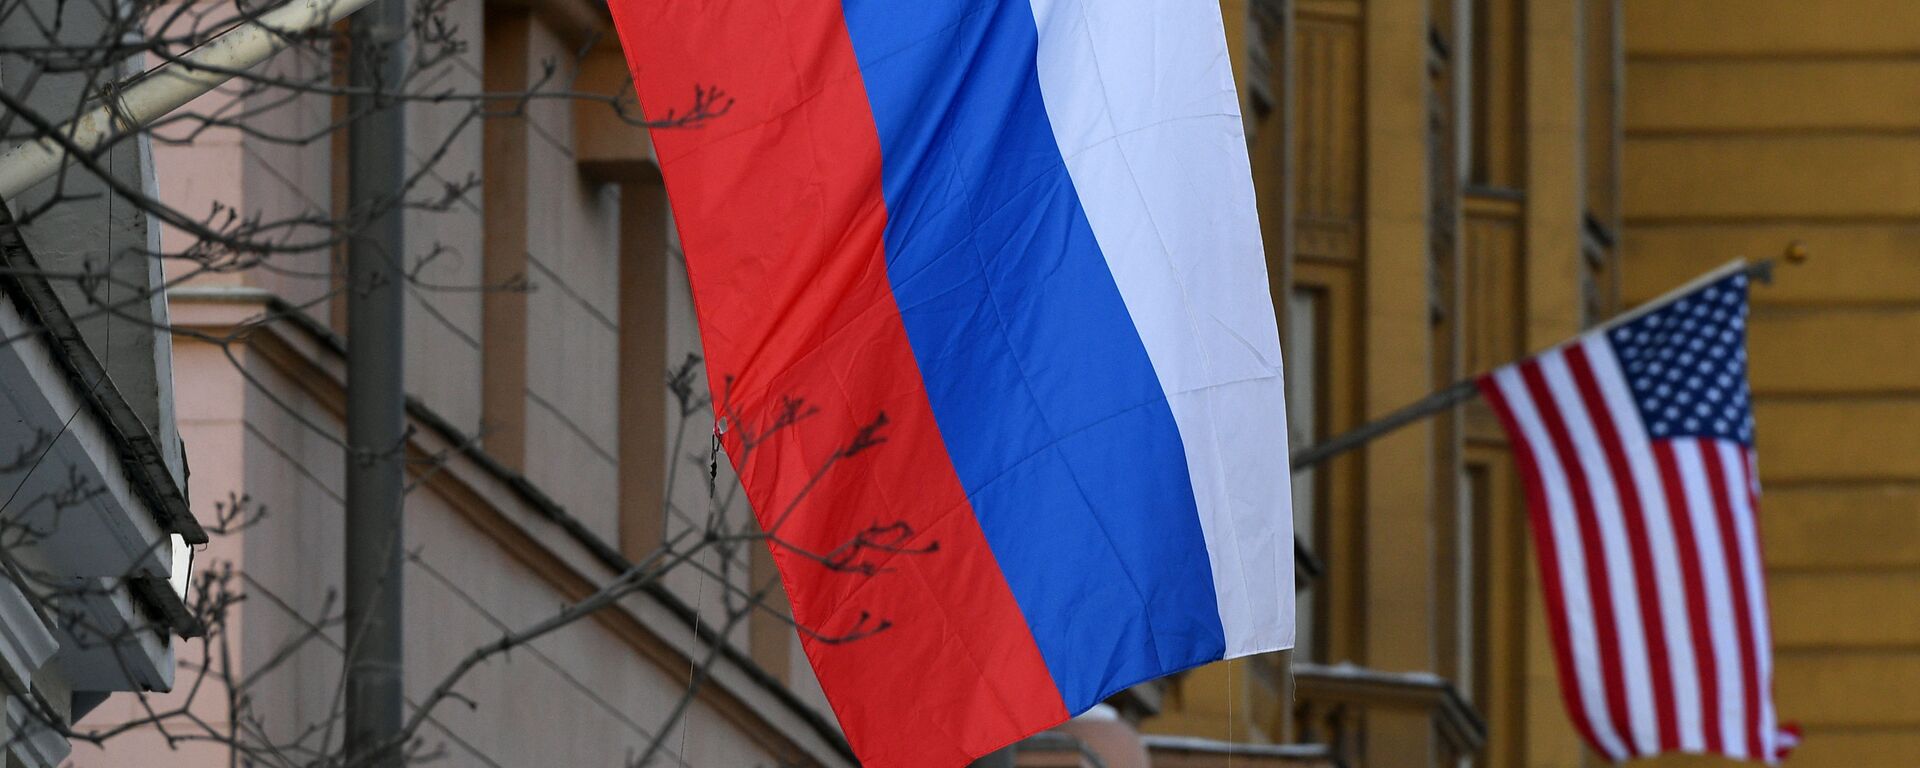 Государственные флаги России и США у американского посольства в Москве, архивное фото - Sputnik Lietuva, 1920, 24.09.2021